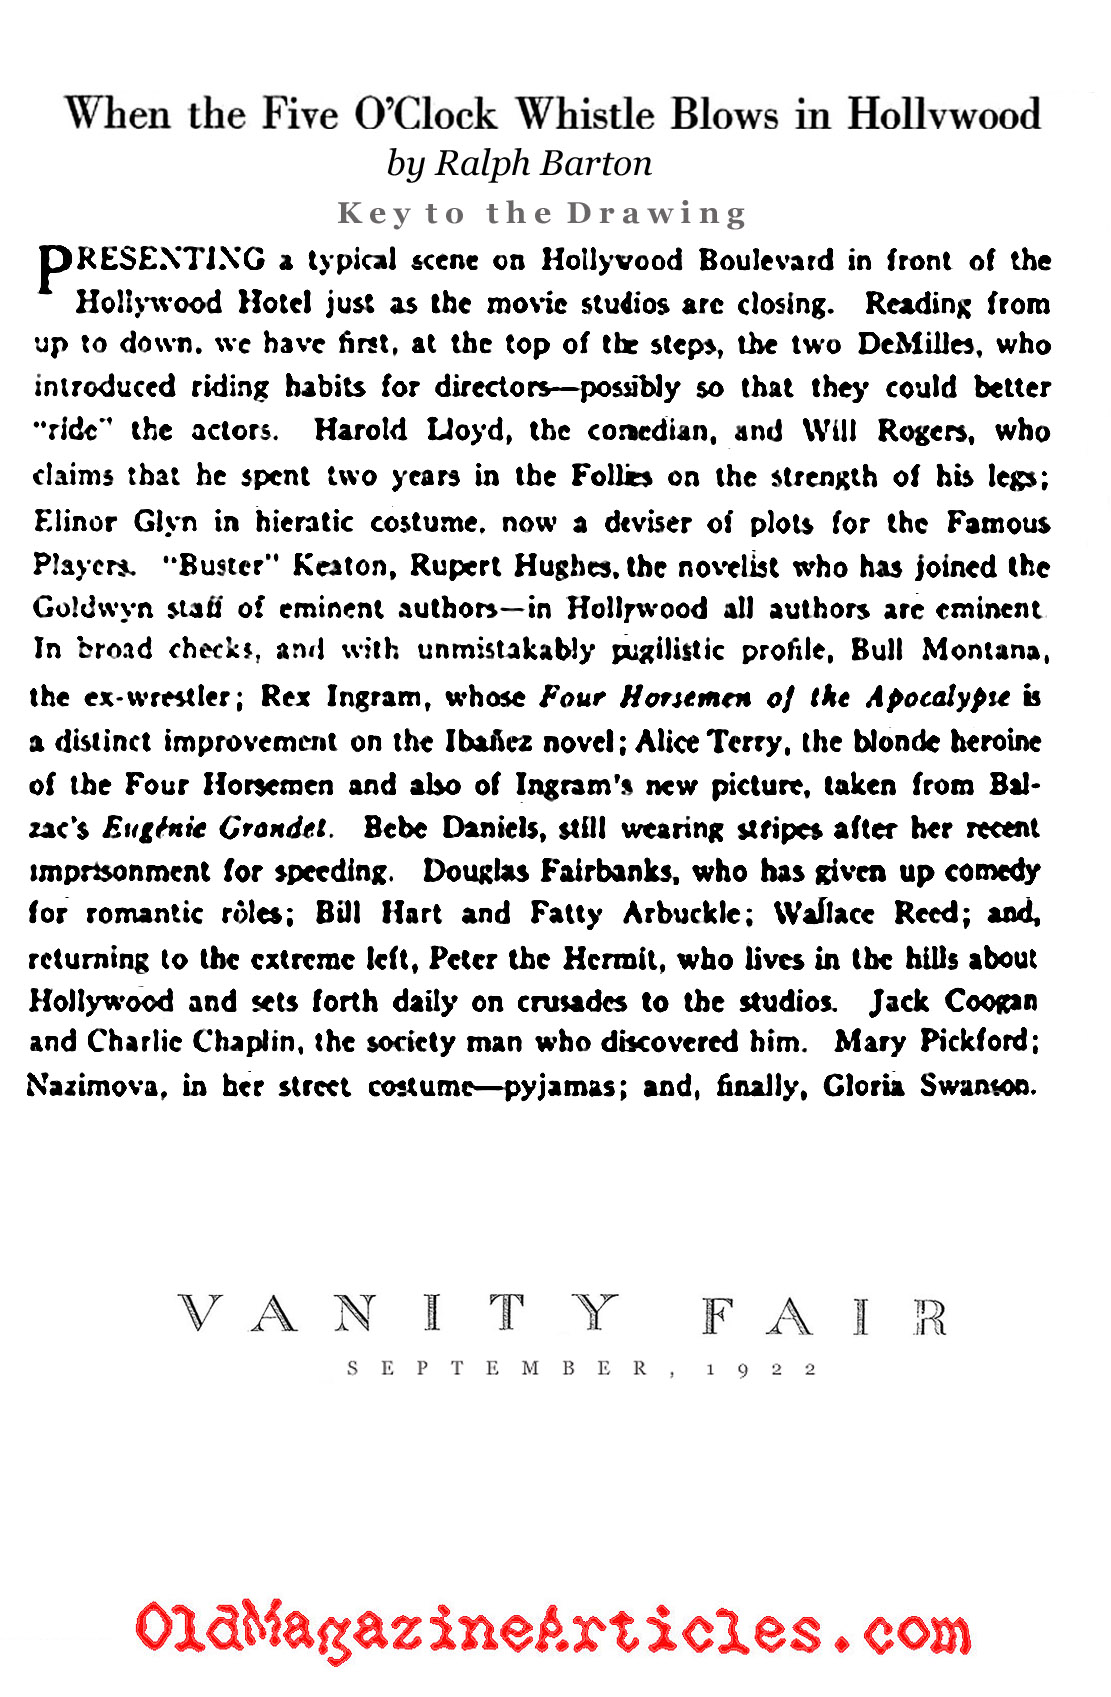 Silent Movie Caricatures (Vanity Fair Magazine, 1922)